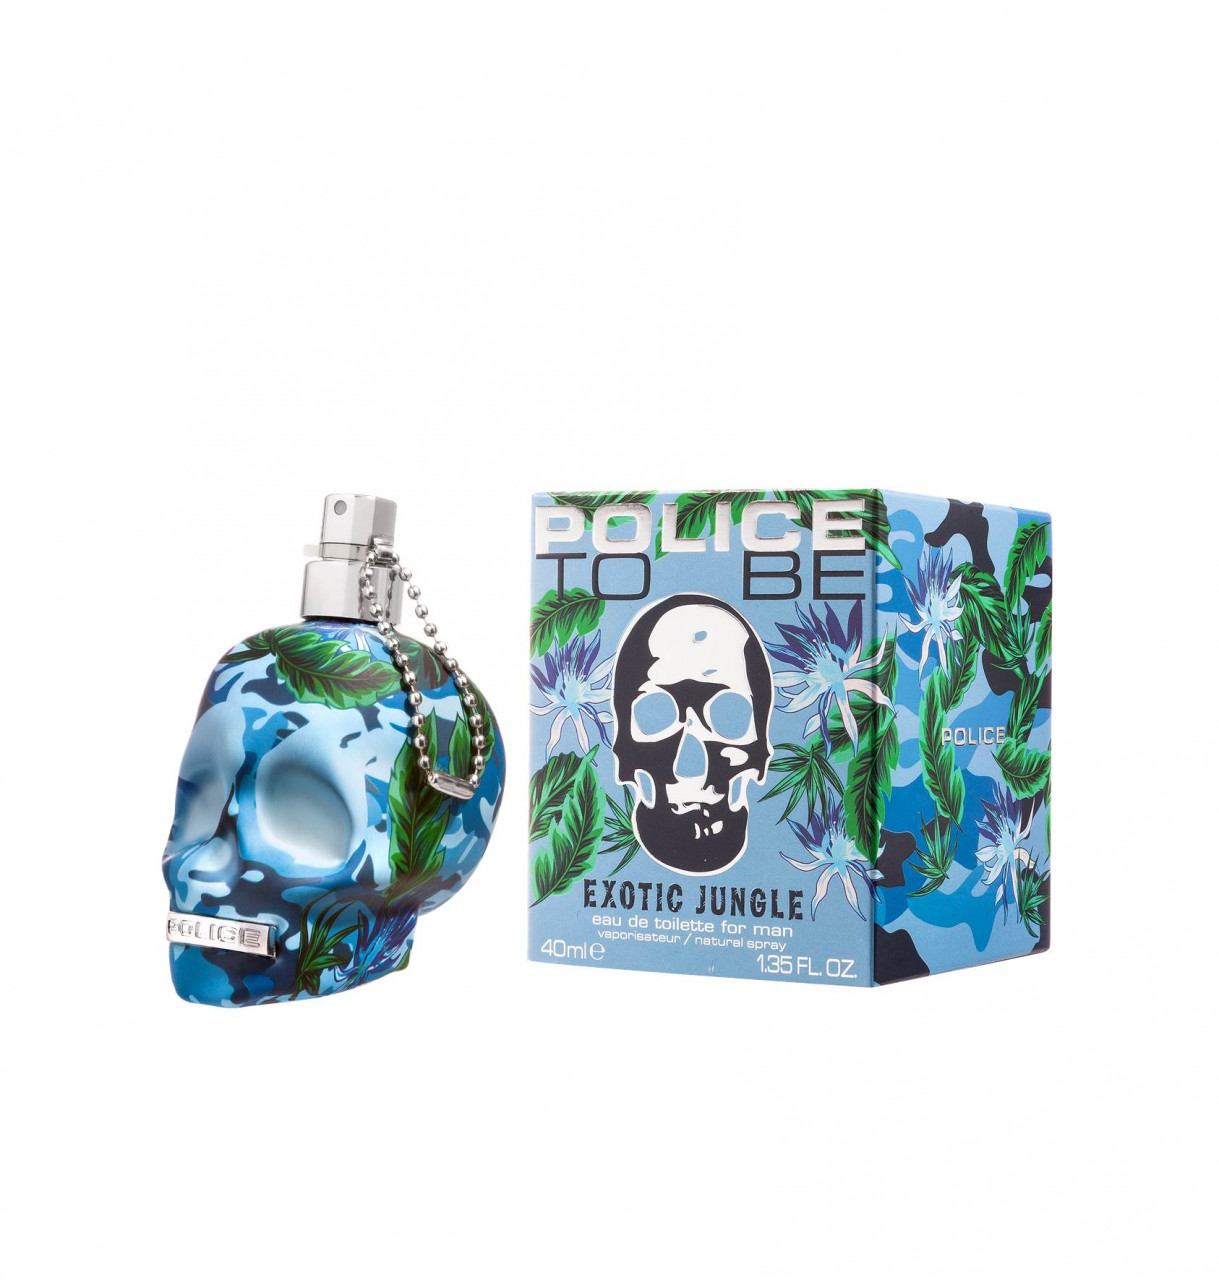 Police - To Be Exotic Jungle Man Eau de Toilette -  40 ml